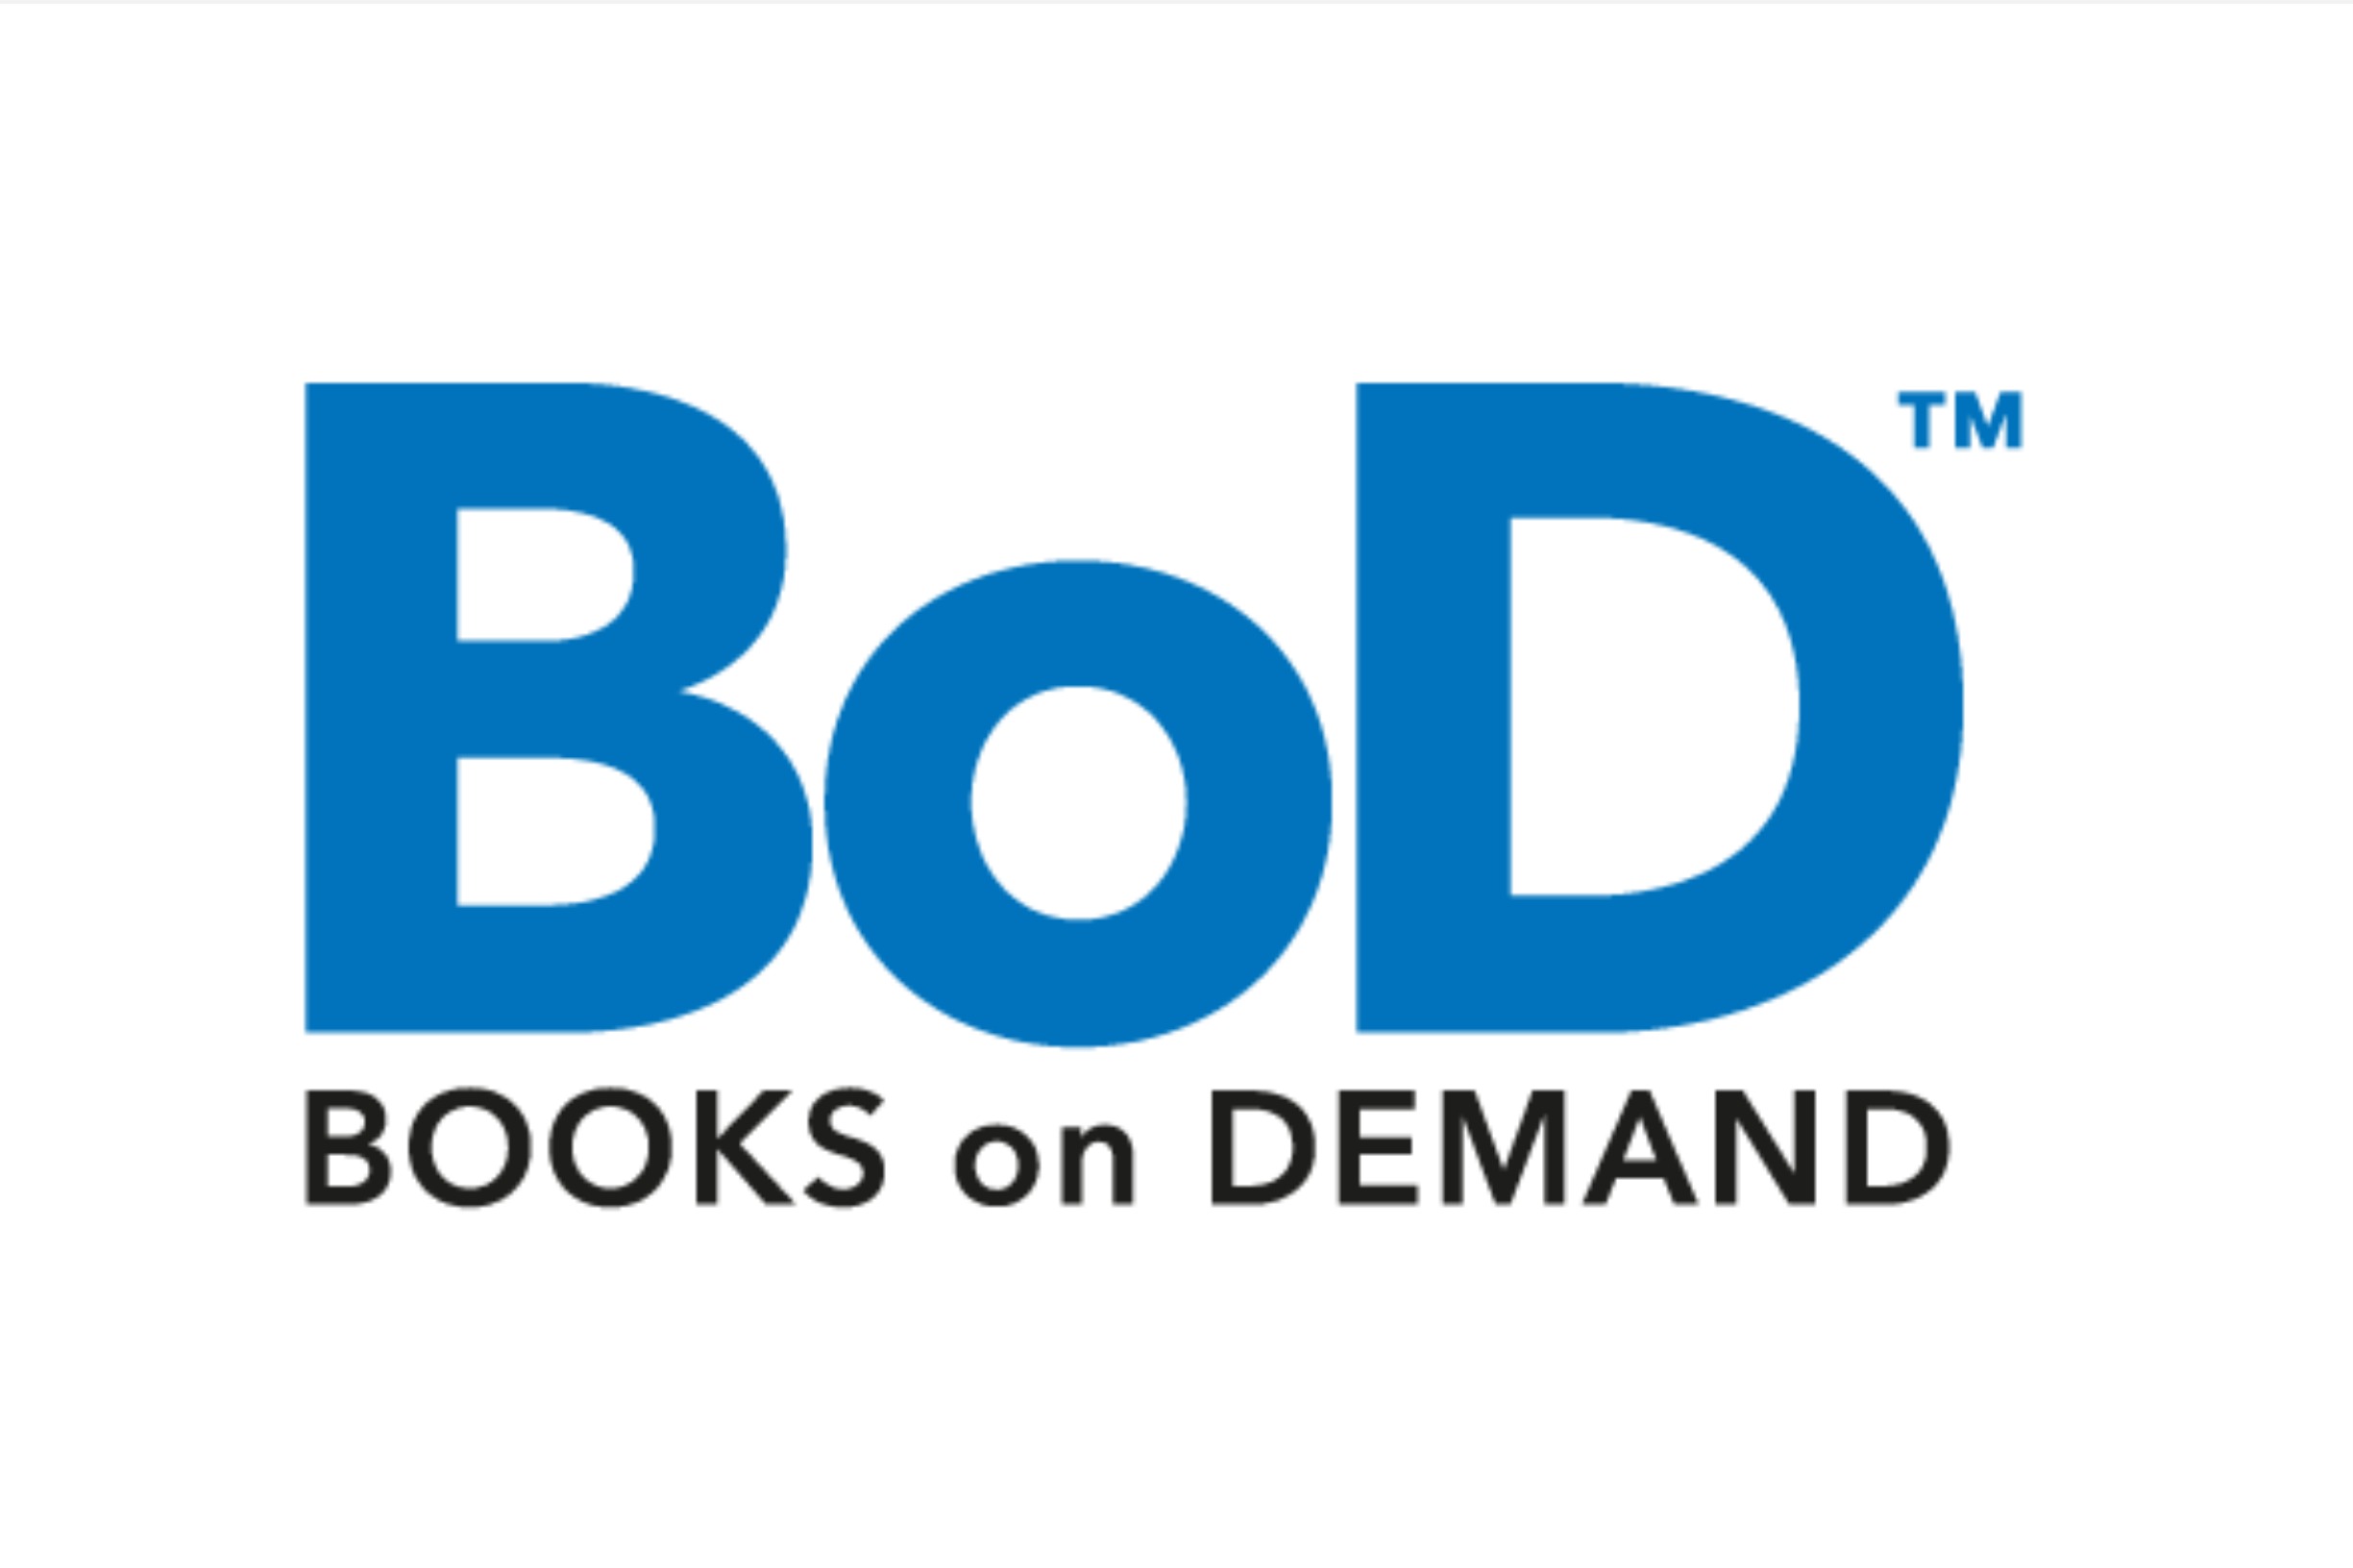 Kundenzentrierung: Books on Demand